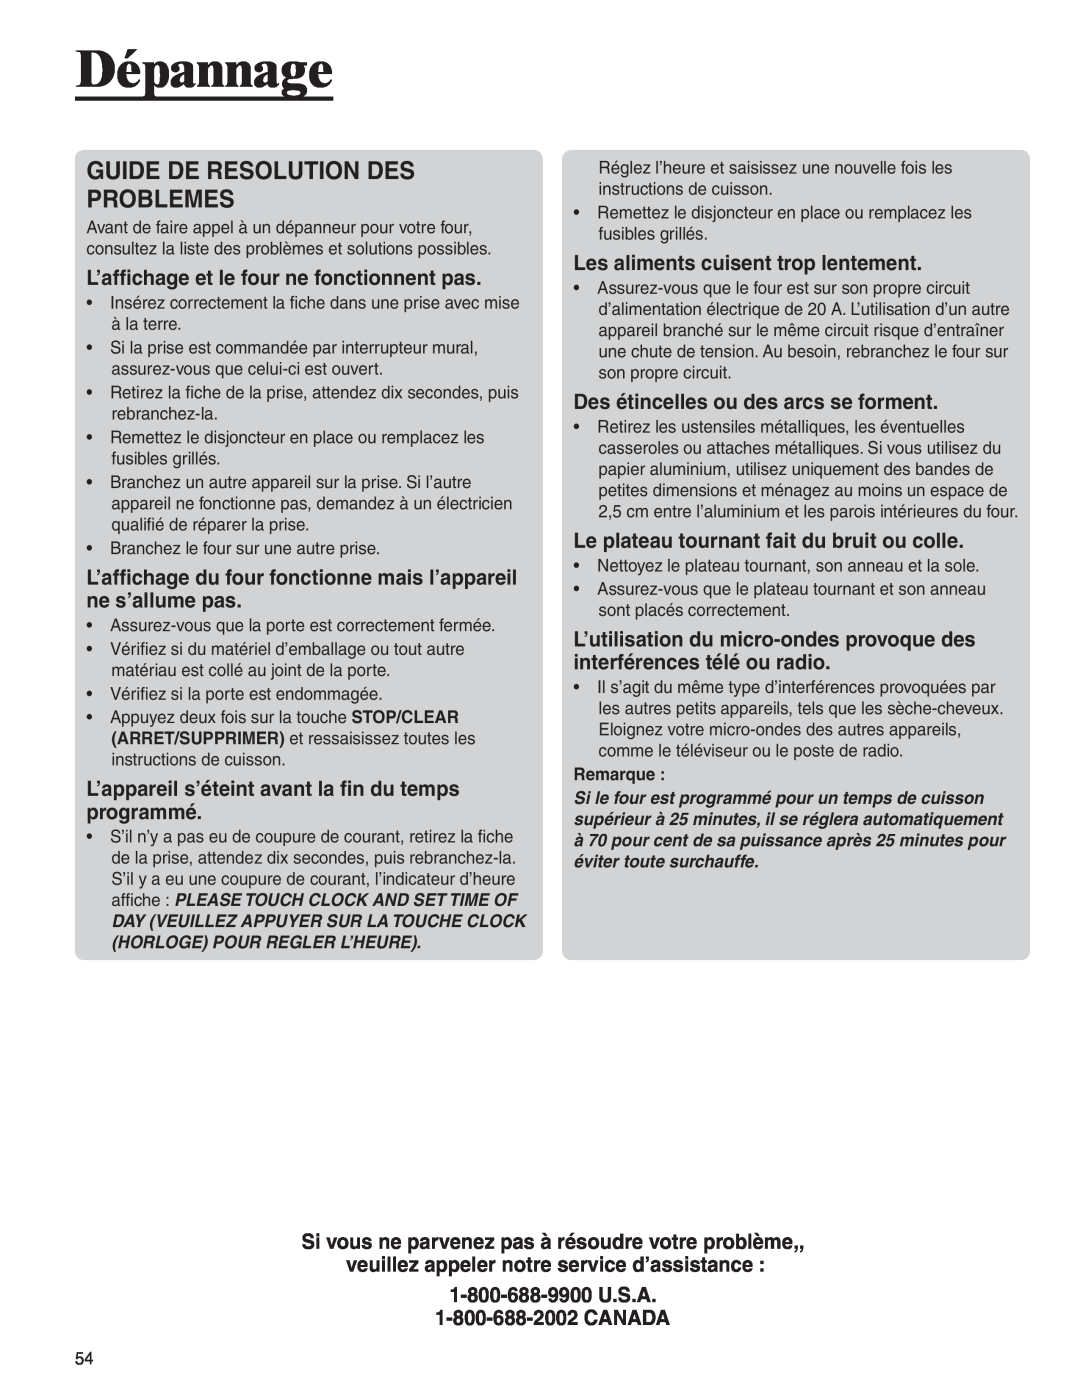 Amana AMC6158BAB, AMC6158BCB important safety instructions Dépannage, Guide De Resolution Des Problemes 